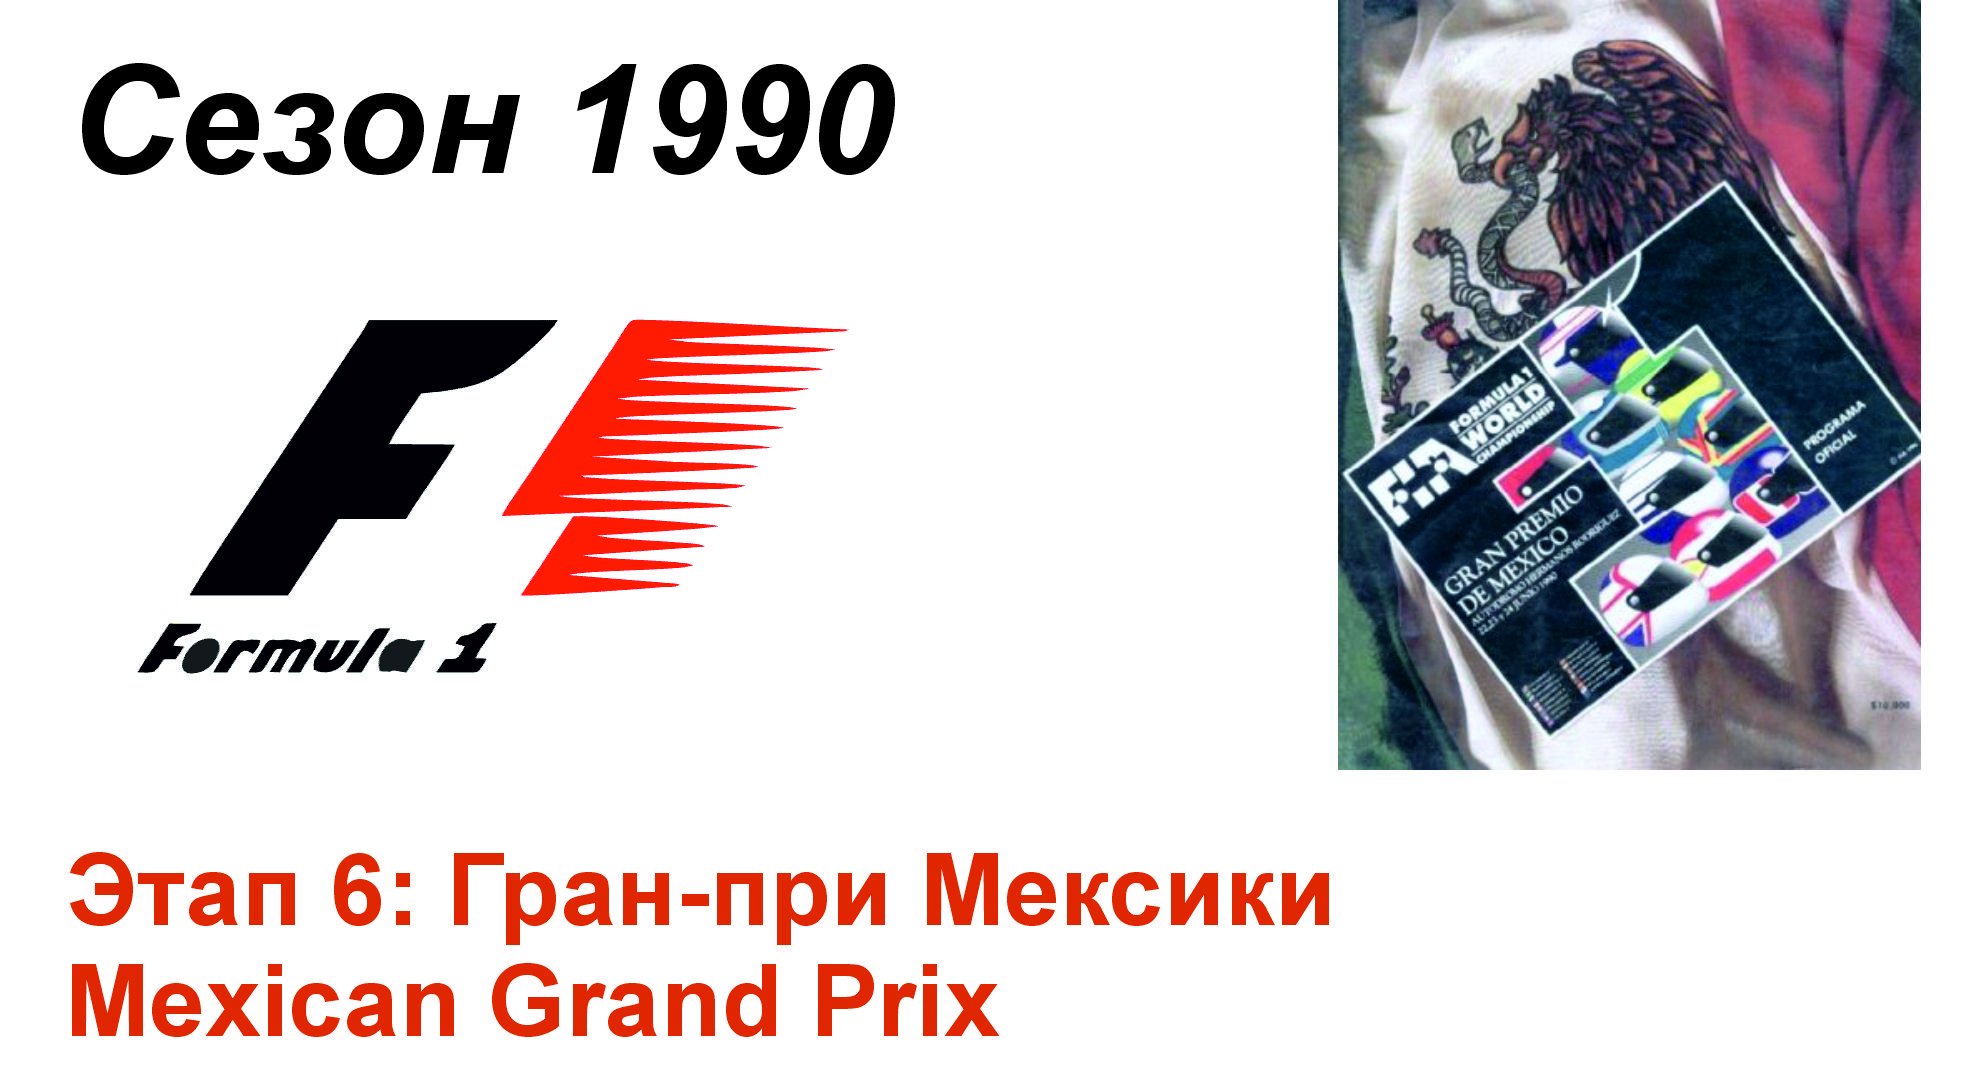 Формула-1 / Formula-1 (1990). Этап 6: Гран-при Мексики (Нем/Ger)